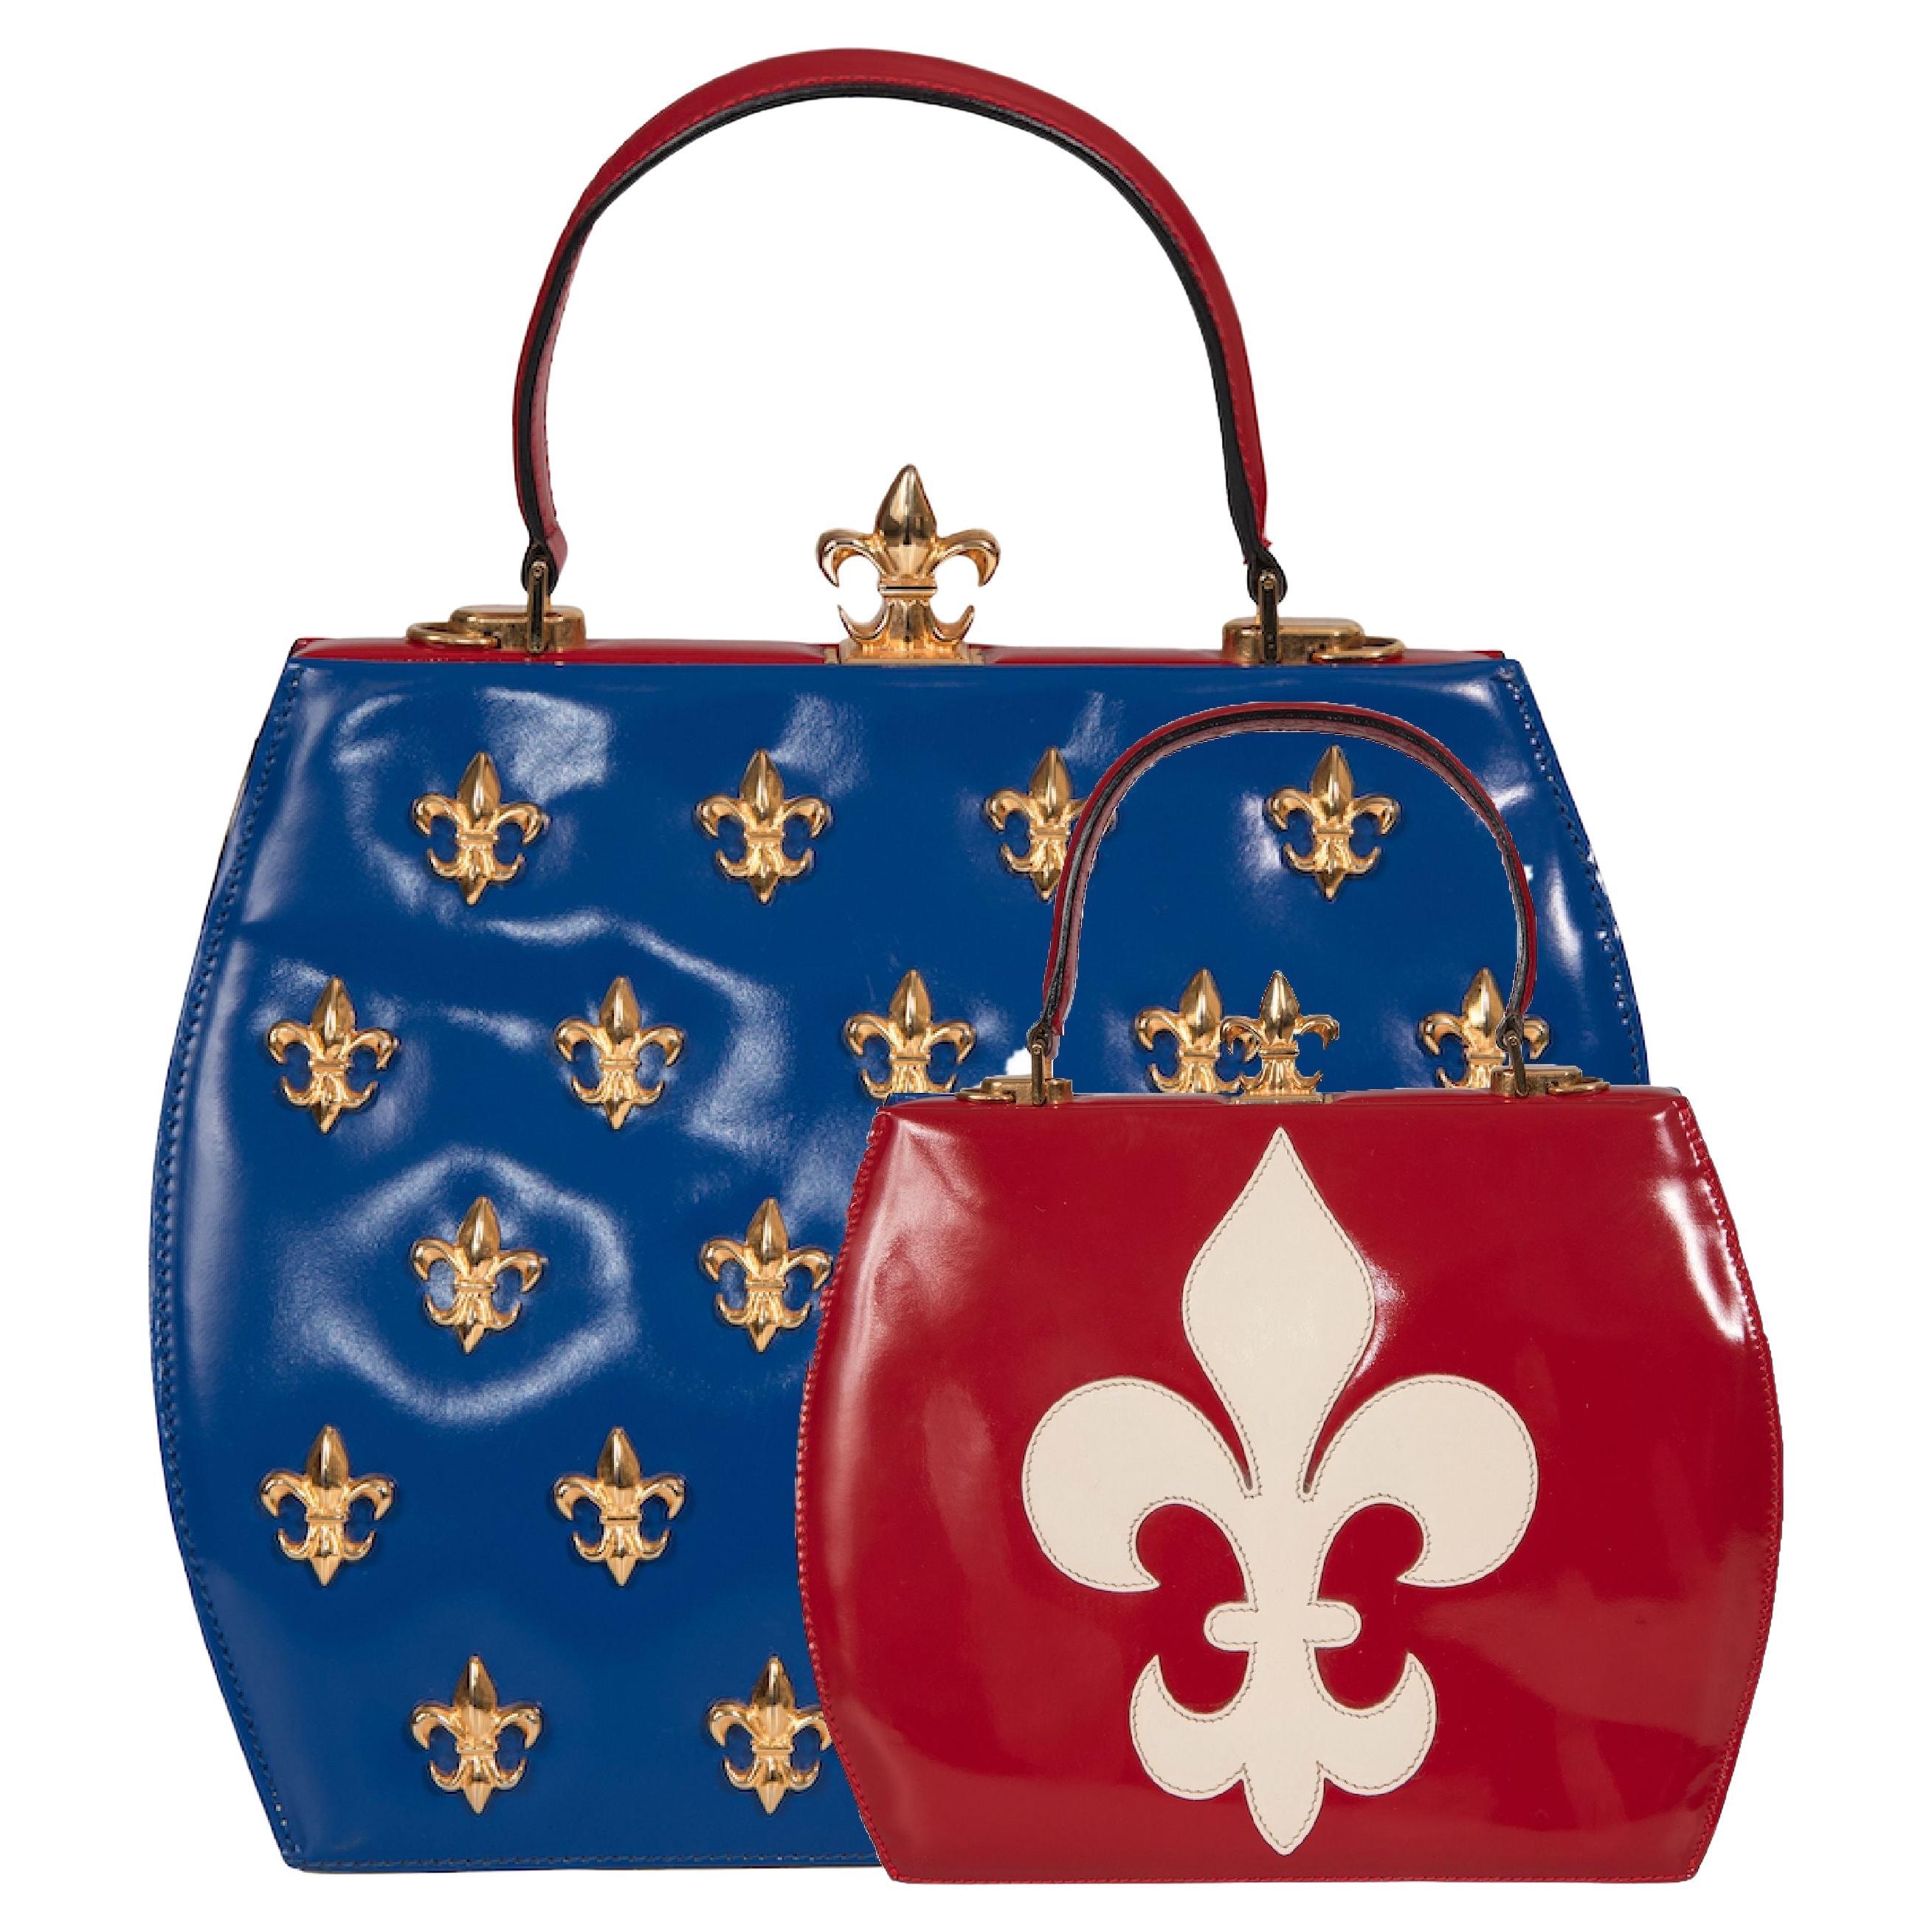 MOSCHINO COUTURE S/S 1993 Fleur-de-Lis Appliquéd Blue & Red Top Handle Bag For Sale